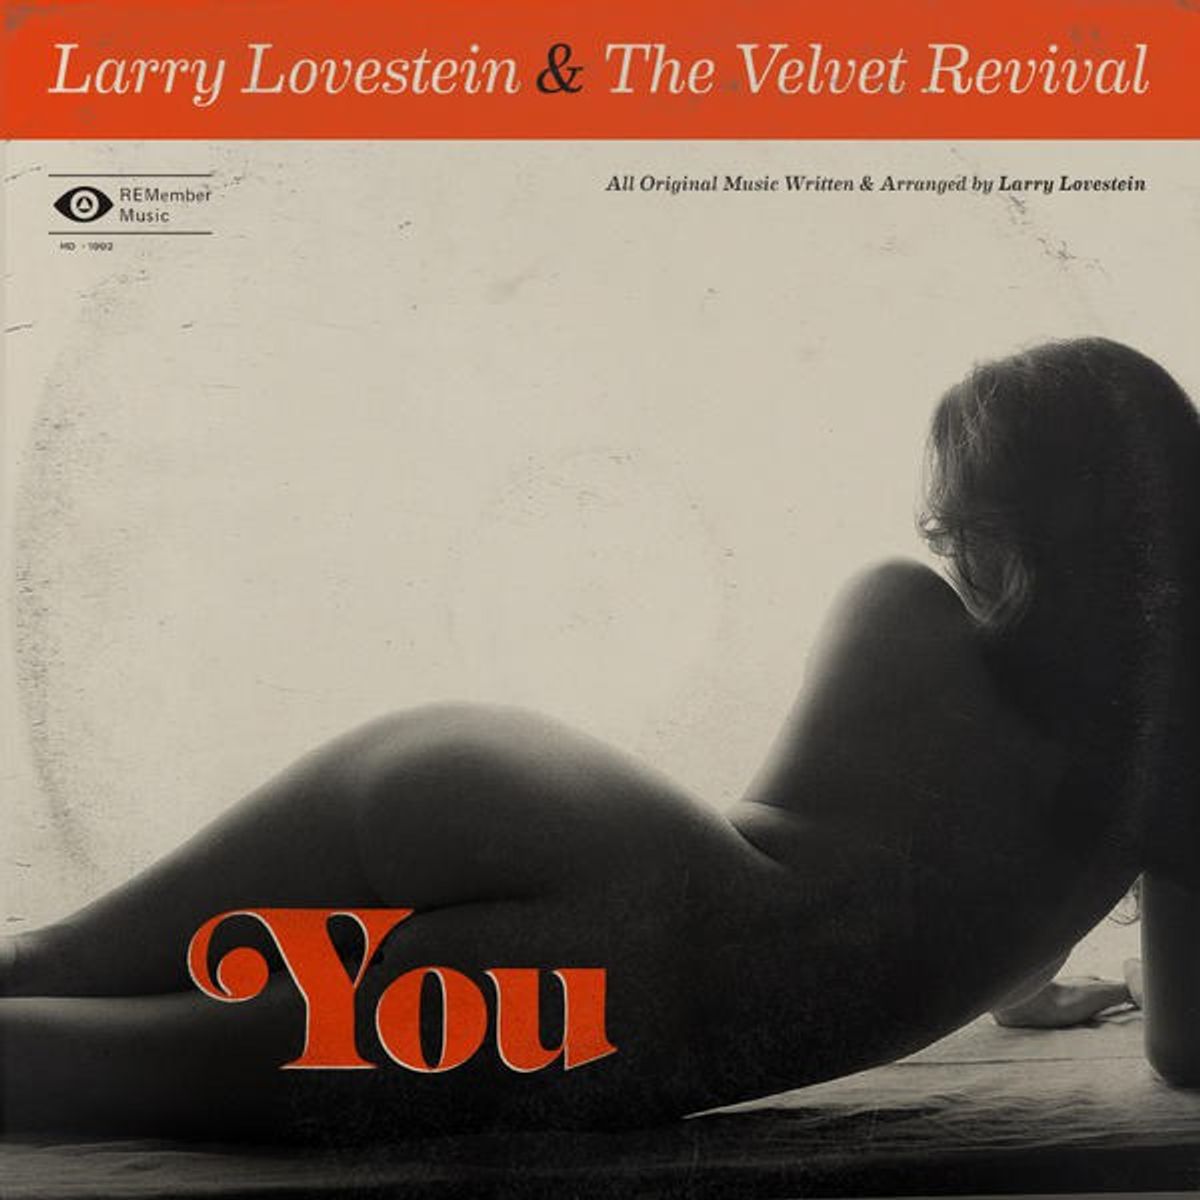 Larry Lovestein & The Velvet Revival's, "You"